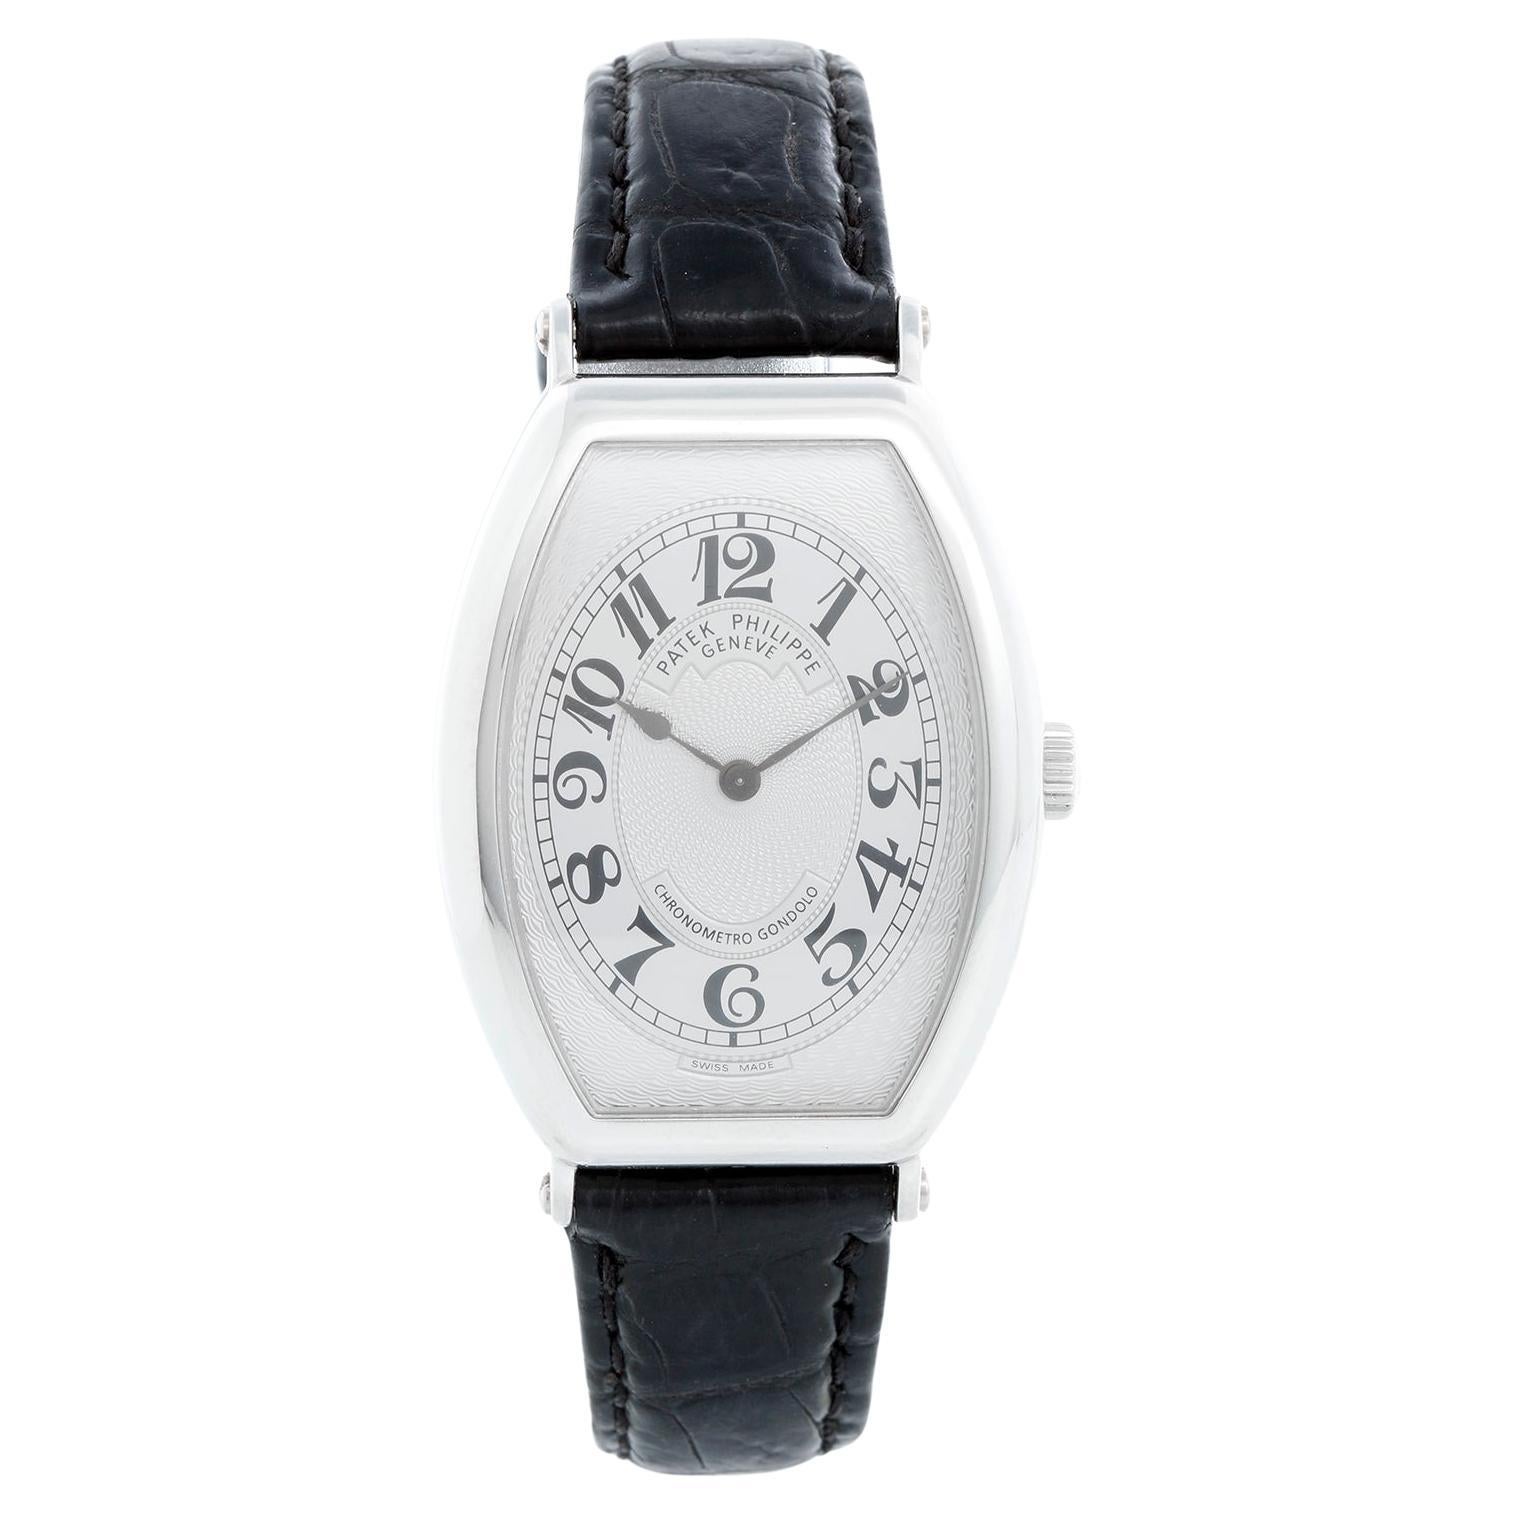 Patek Philippe Chronometro Gondolo Platinum Men's Watch  5098 P (or 5098P)